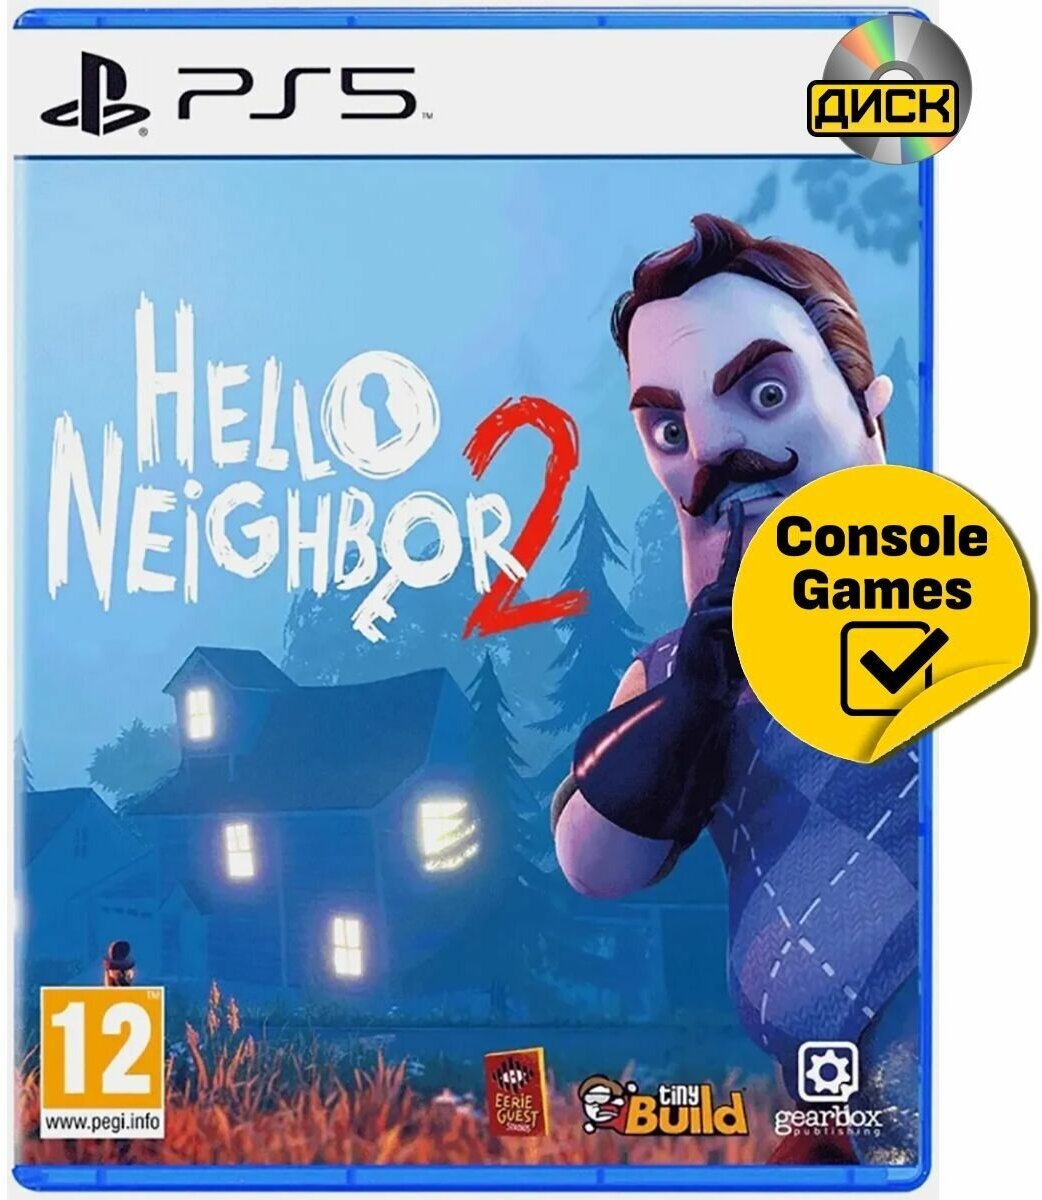 Игра Hello Neighbor 2 (Привет Сосед 2) для PS5 (диск русские субтитры)